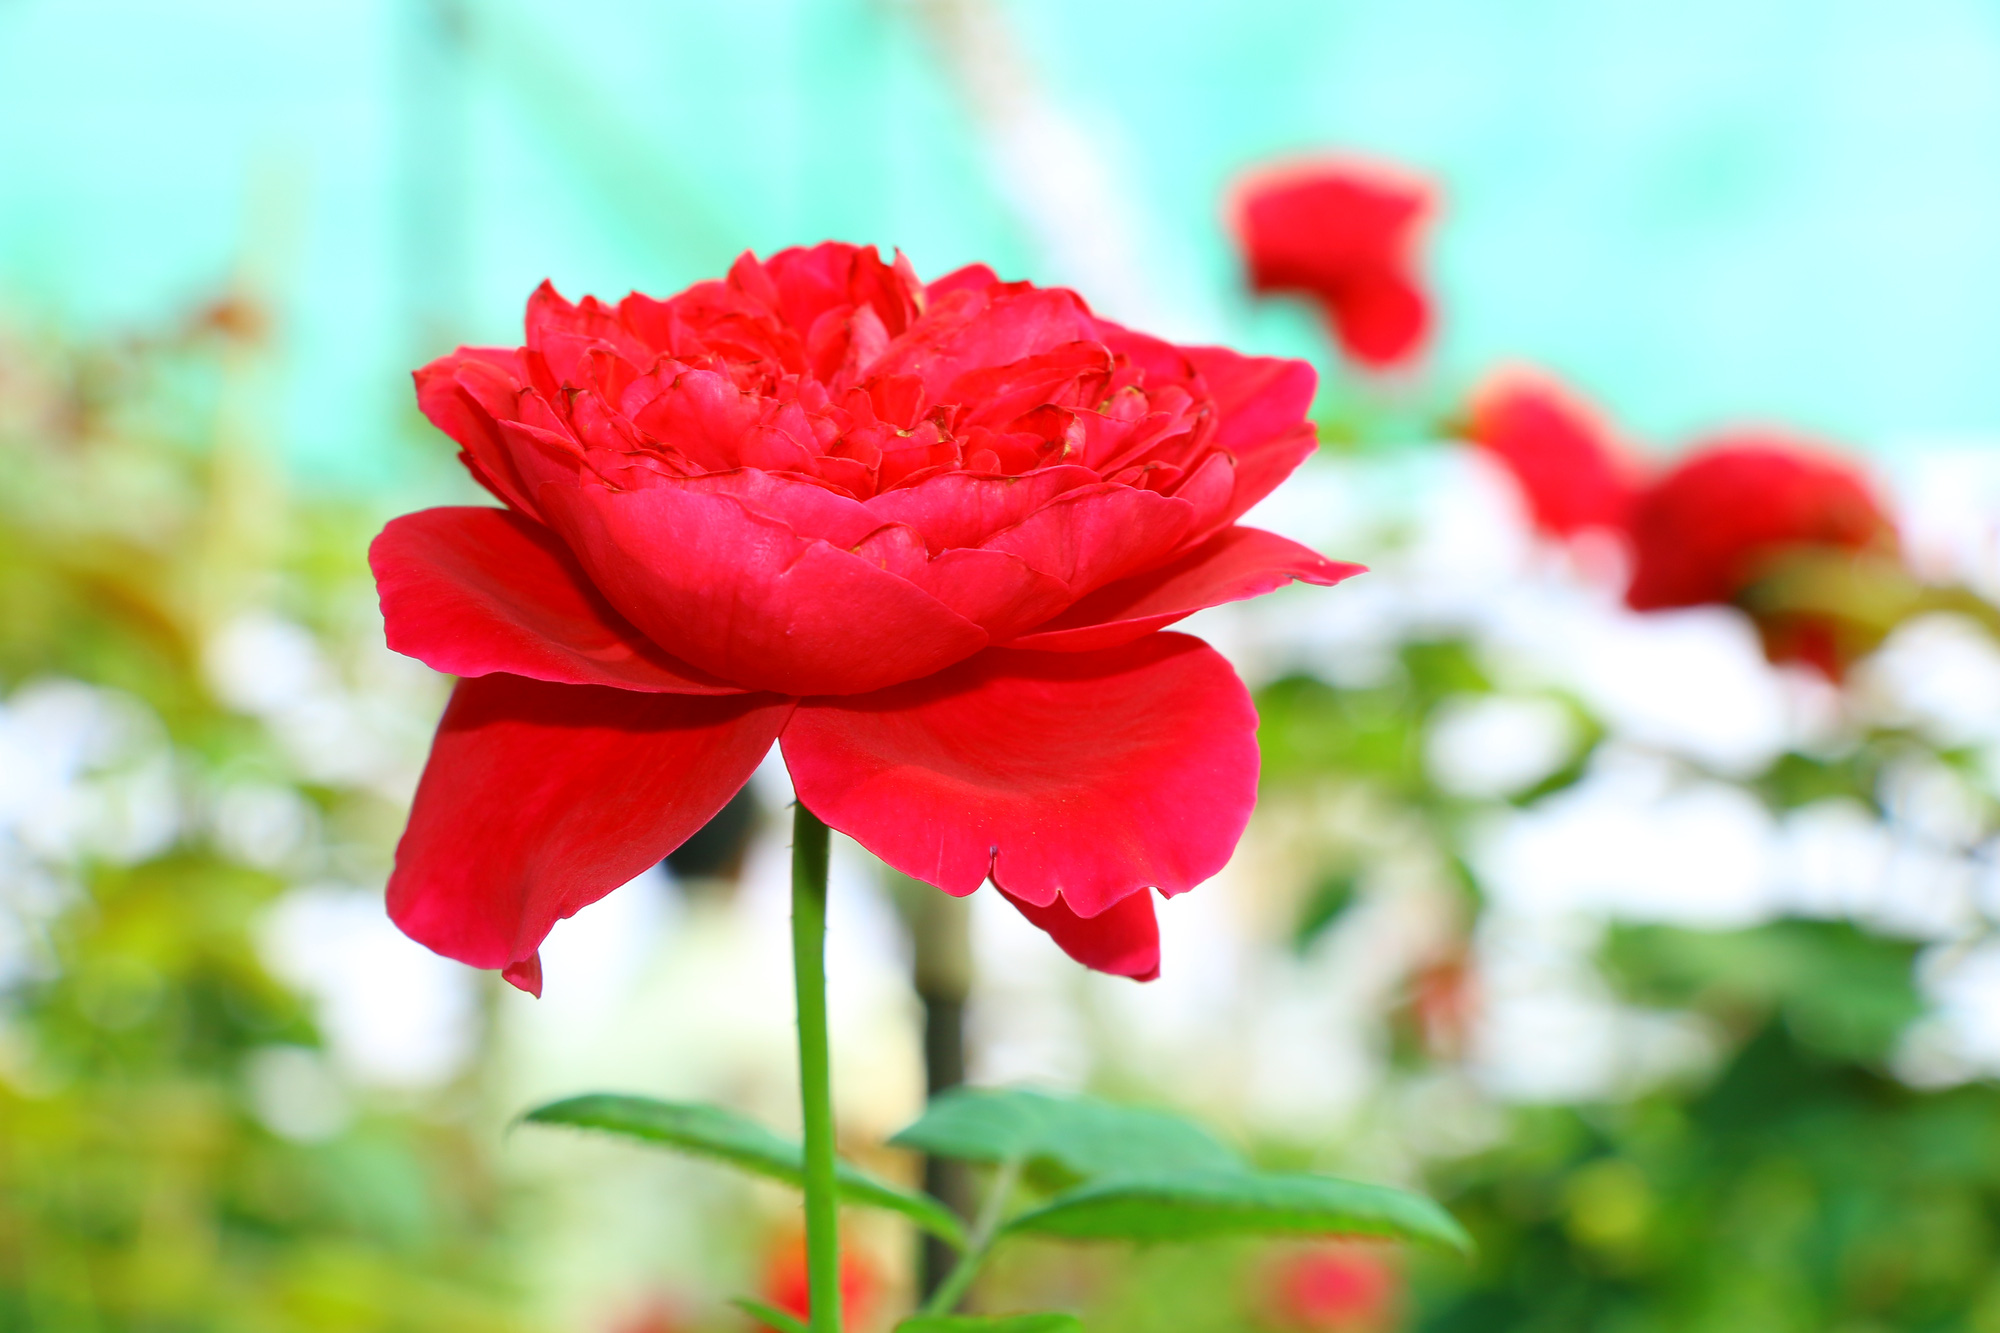 Hãy khám phá vẻ đẹp tuyệt vời của vườn hoa hồng Pháp với những bông hoa thơm ngát và màu sắc tinh tế. Đây là một địa điểm lý tưởng cho những ai yêu thích các bức ảnh hoa cổ điển và muốn tìm kiếm một nơi yên tĩnh để thư giãn và chiêm ngưỡng những bông hồng lung linh.